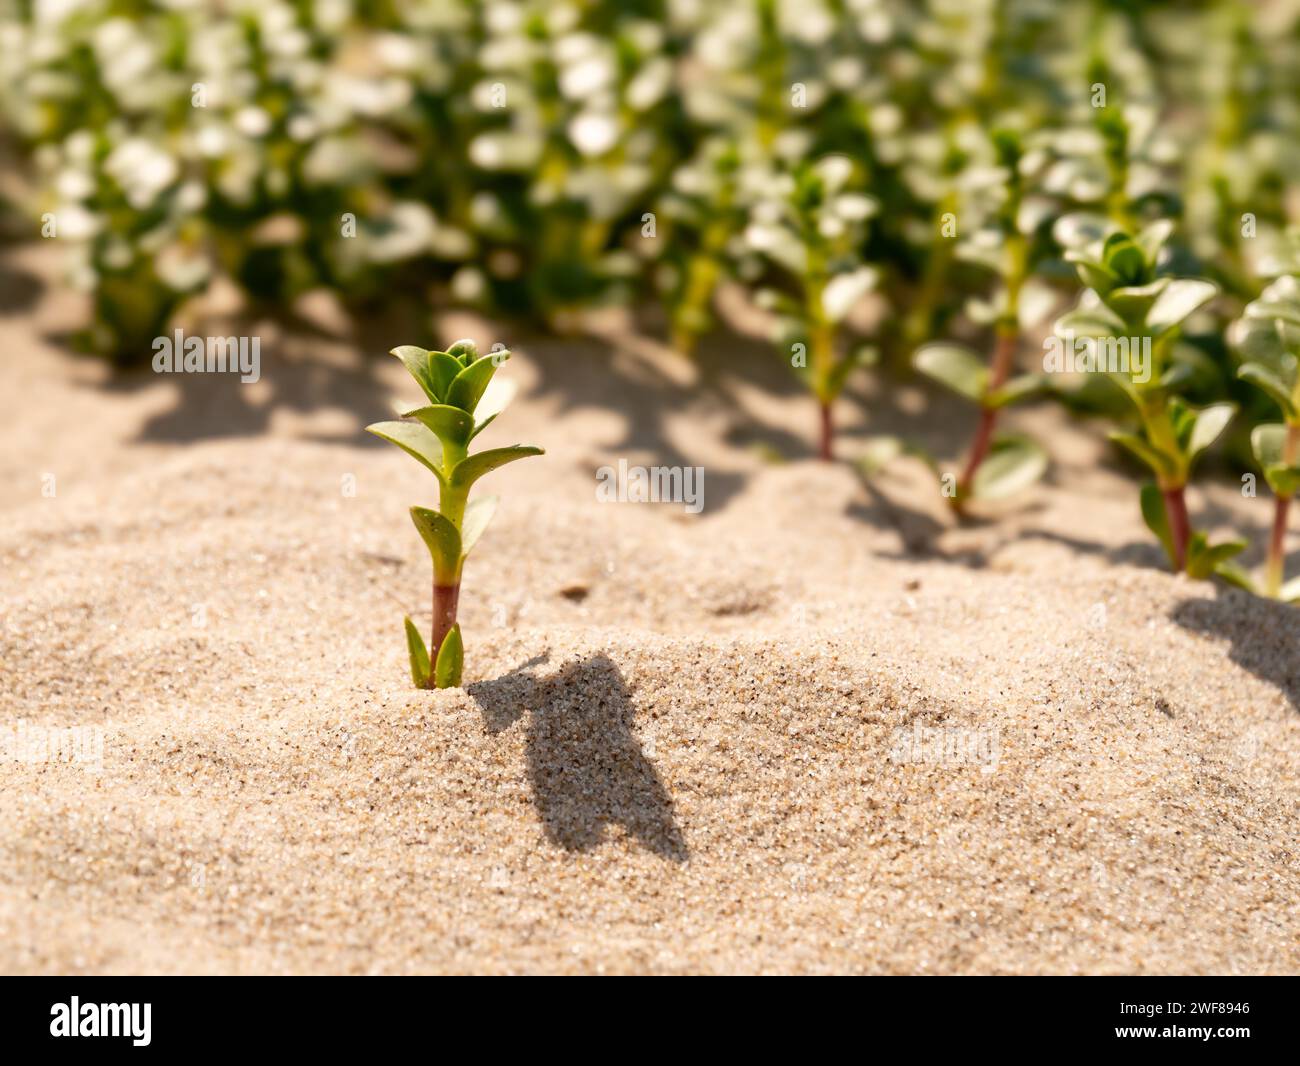 Sablier de mer, Hockenya peploides, poussant dans le sable au bord de la mer, réserve naturelle Kwade Hoek, Goeree, Zuid-Holland, pays-Bas Banque D'Images